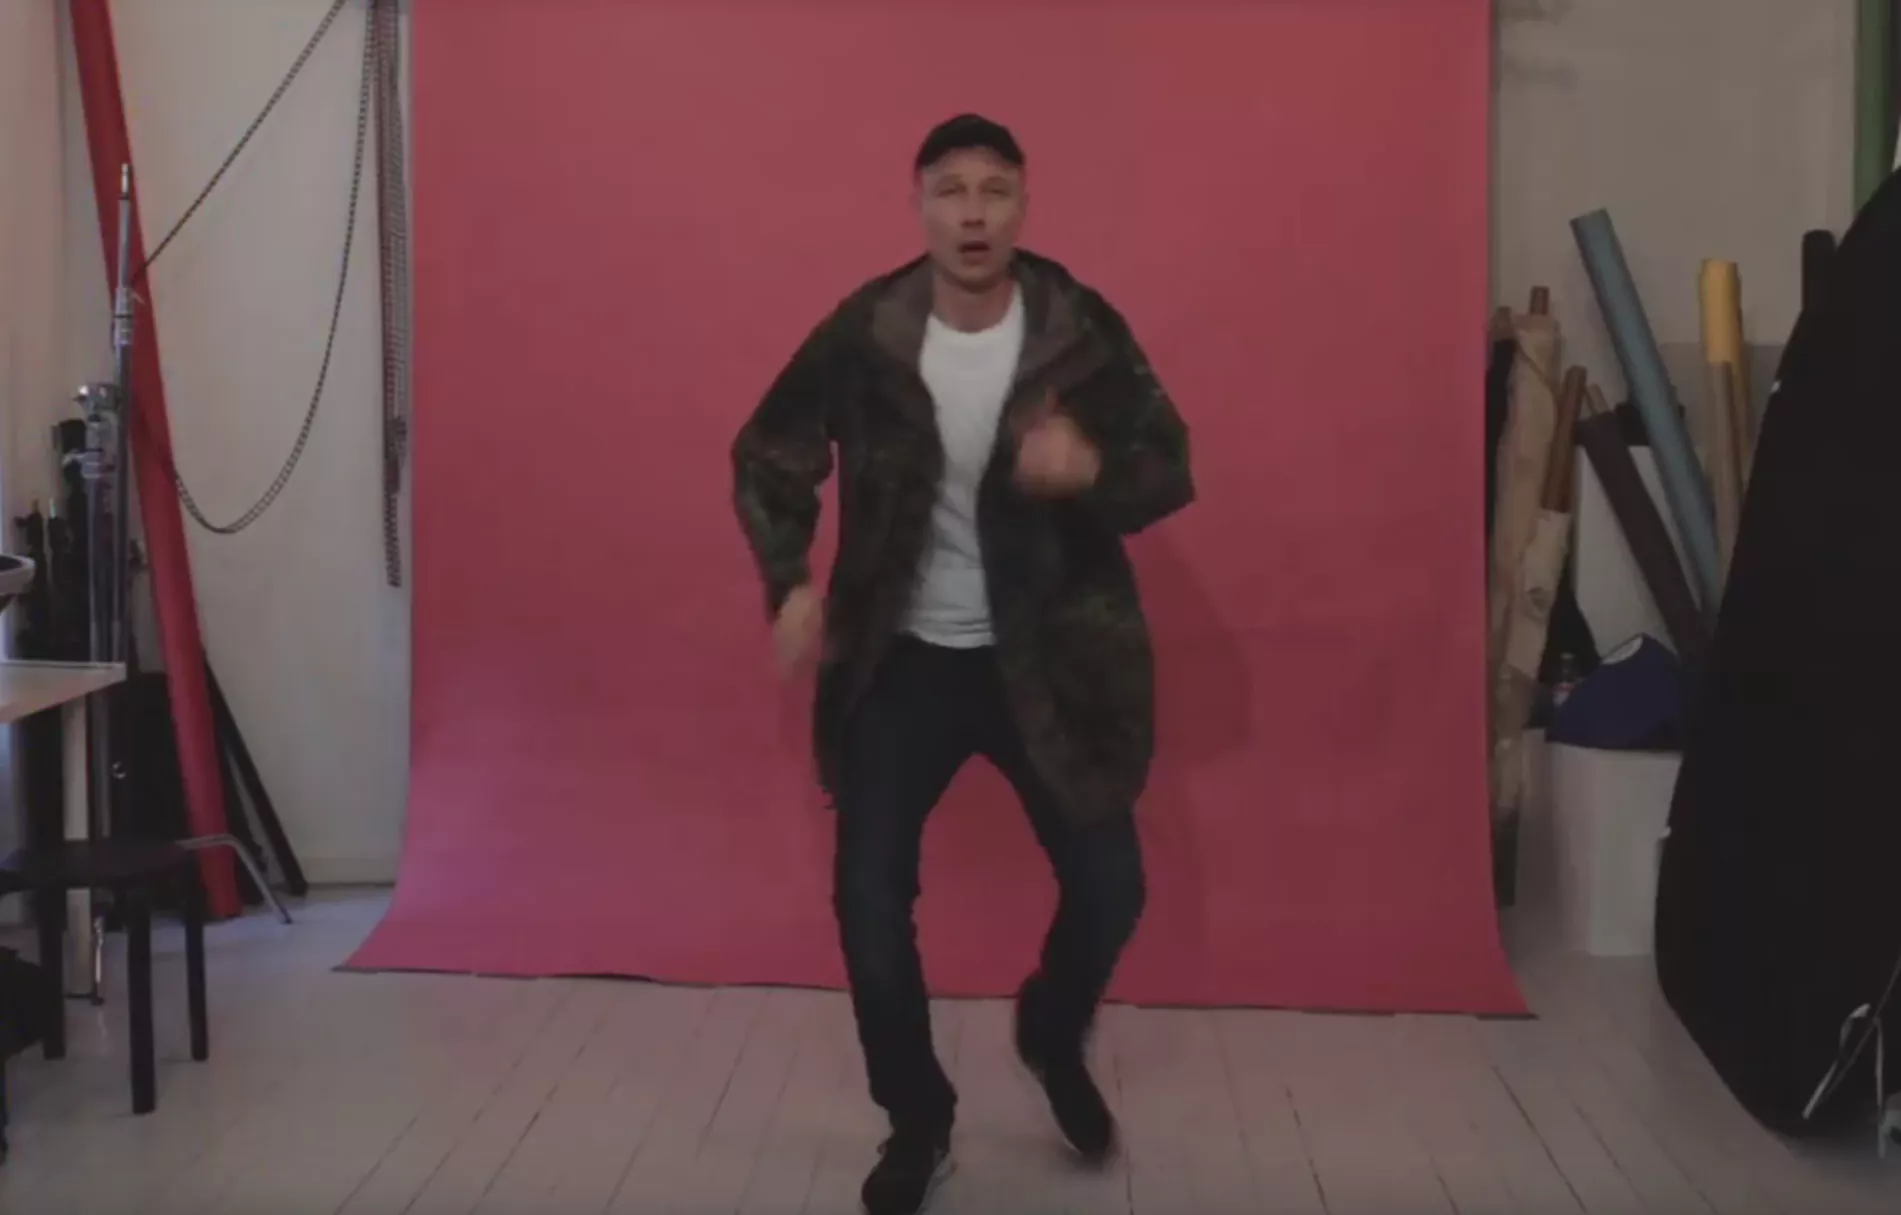 Videopremiere: Specktors udfolder dansemantra med shuffle-moves